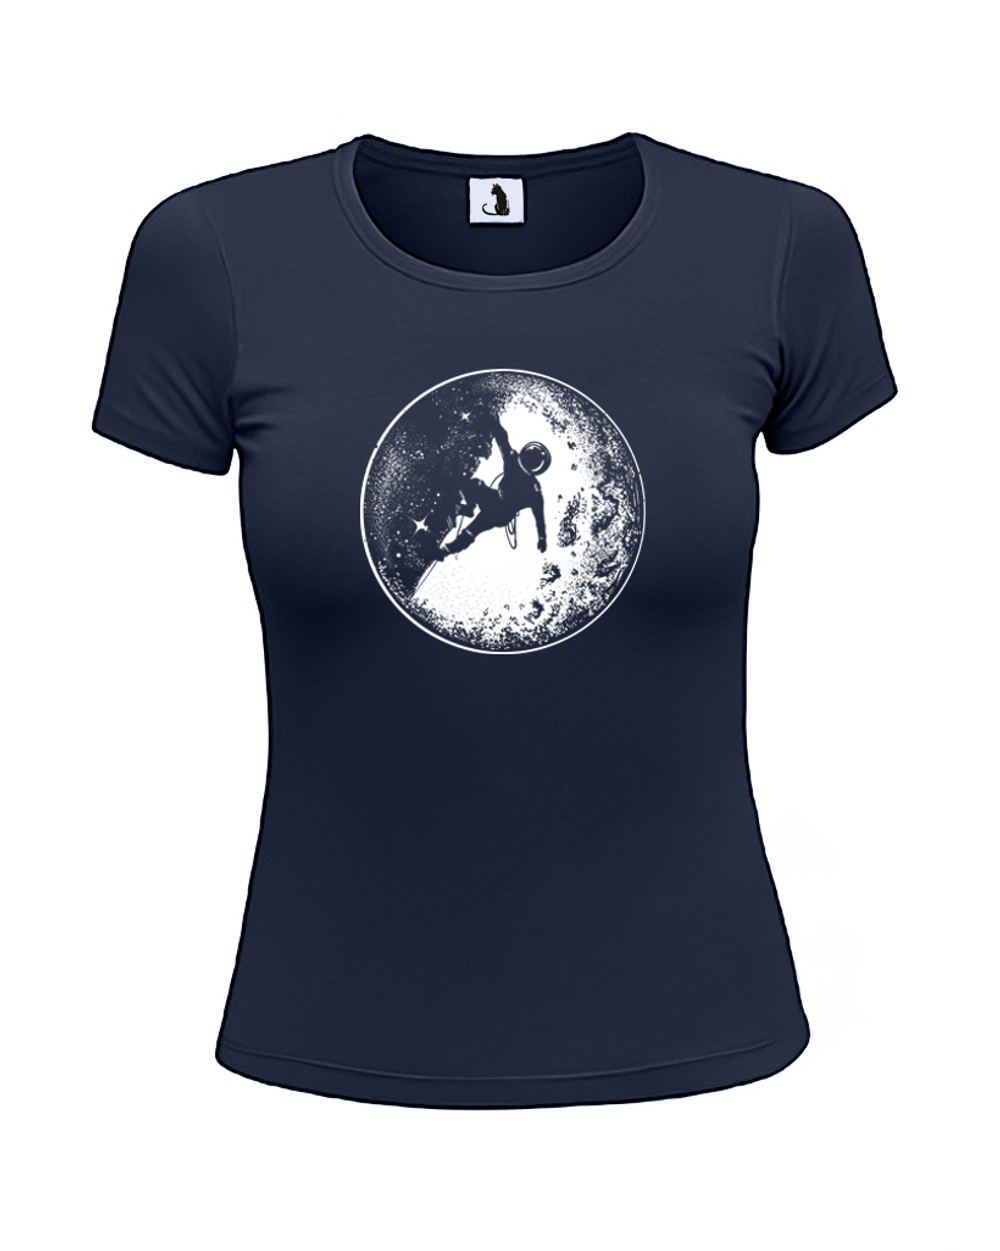 Футболка Космонавт на Луне женская приталенная темно-синяя с белым рисунком